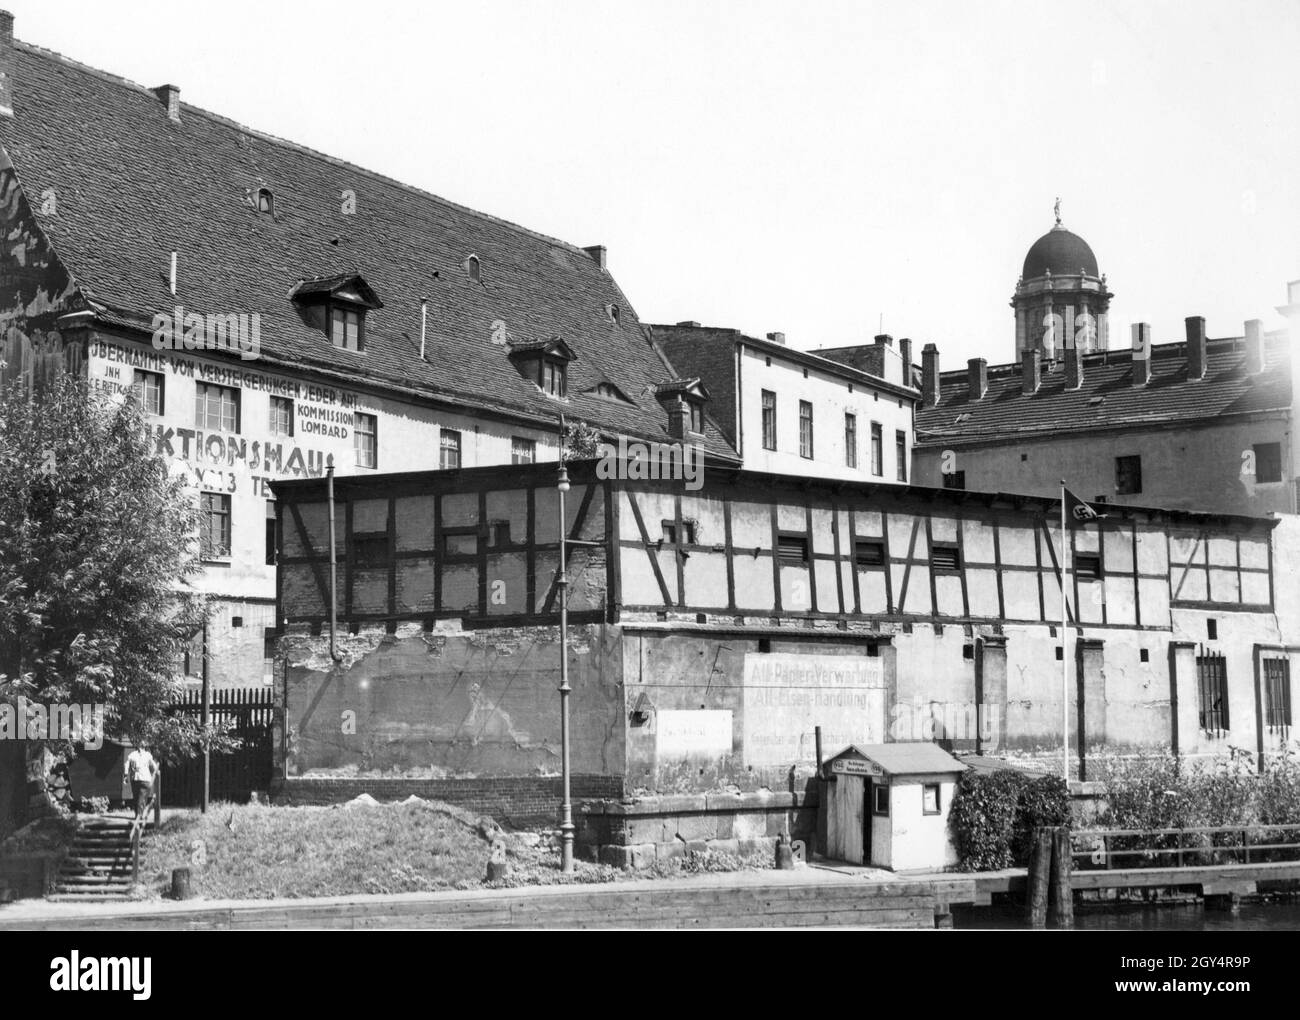 'Nel luglio 1934, l'ultimo tour della città ha avuto luogo attraverso il vicolo am Krögel a Berlino-Mitte, i cui edifici sono stati demoliti poco dopo. La foto mostra alcune delle case che si trovavano nei pressi della Casa della Città Vecchia (torre sullo sfondo), tra cui un magazzino per ''Alt-Papier-Verwertung, Alt-Eisen-Handlung'' e la casa d'asta del proprietario C. E. Bittkar con ''Übernahme von Versteigerungen jeder Art Commission Lombard''. [traduzione automatizzata]' Foto Stock